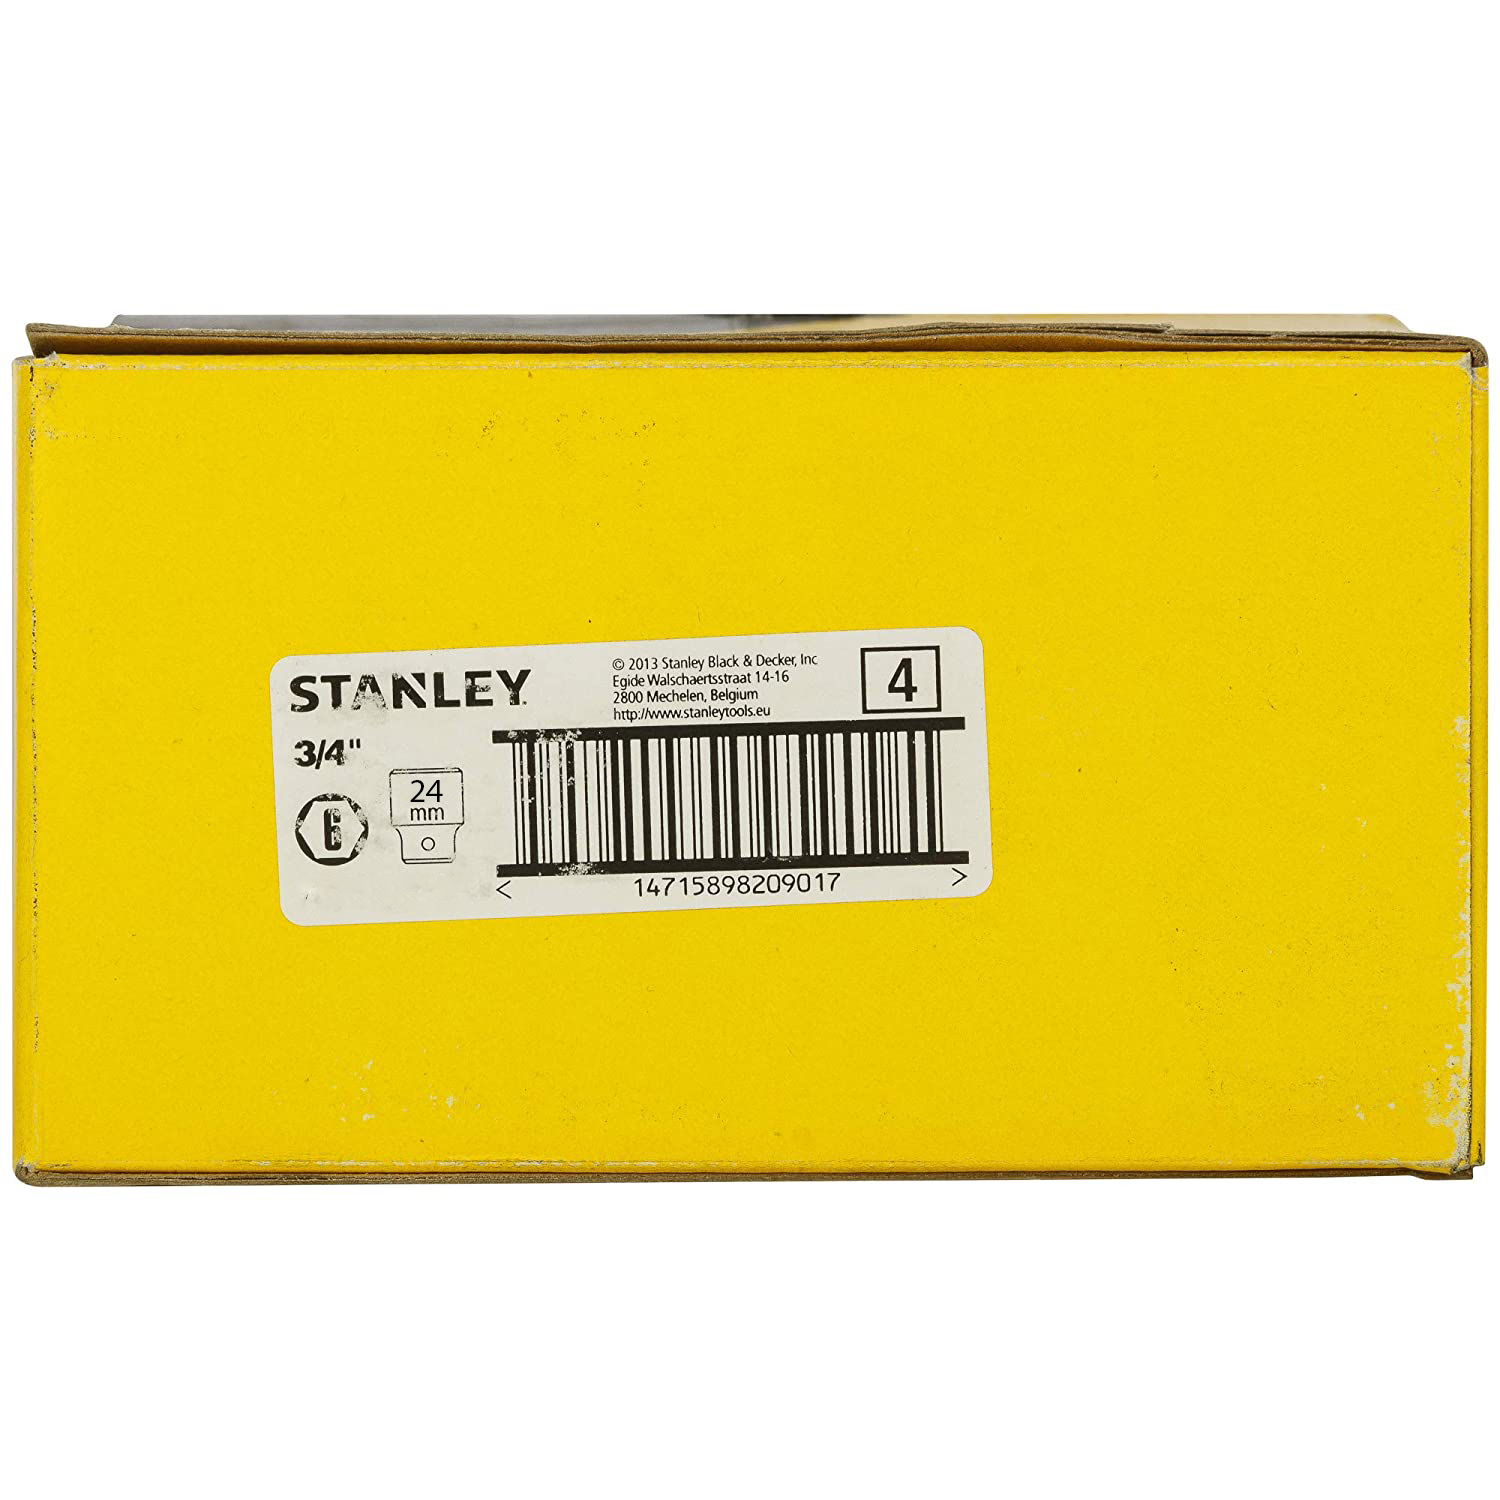 Hình ảnh 6 của mặt hàng Đầu tuýp 3/4" 6 PT LONG IMPACT SOCKET 24MM Stanley STMT73469-8B